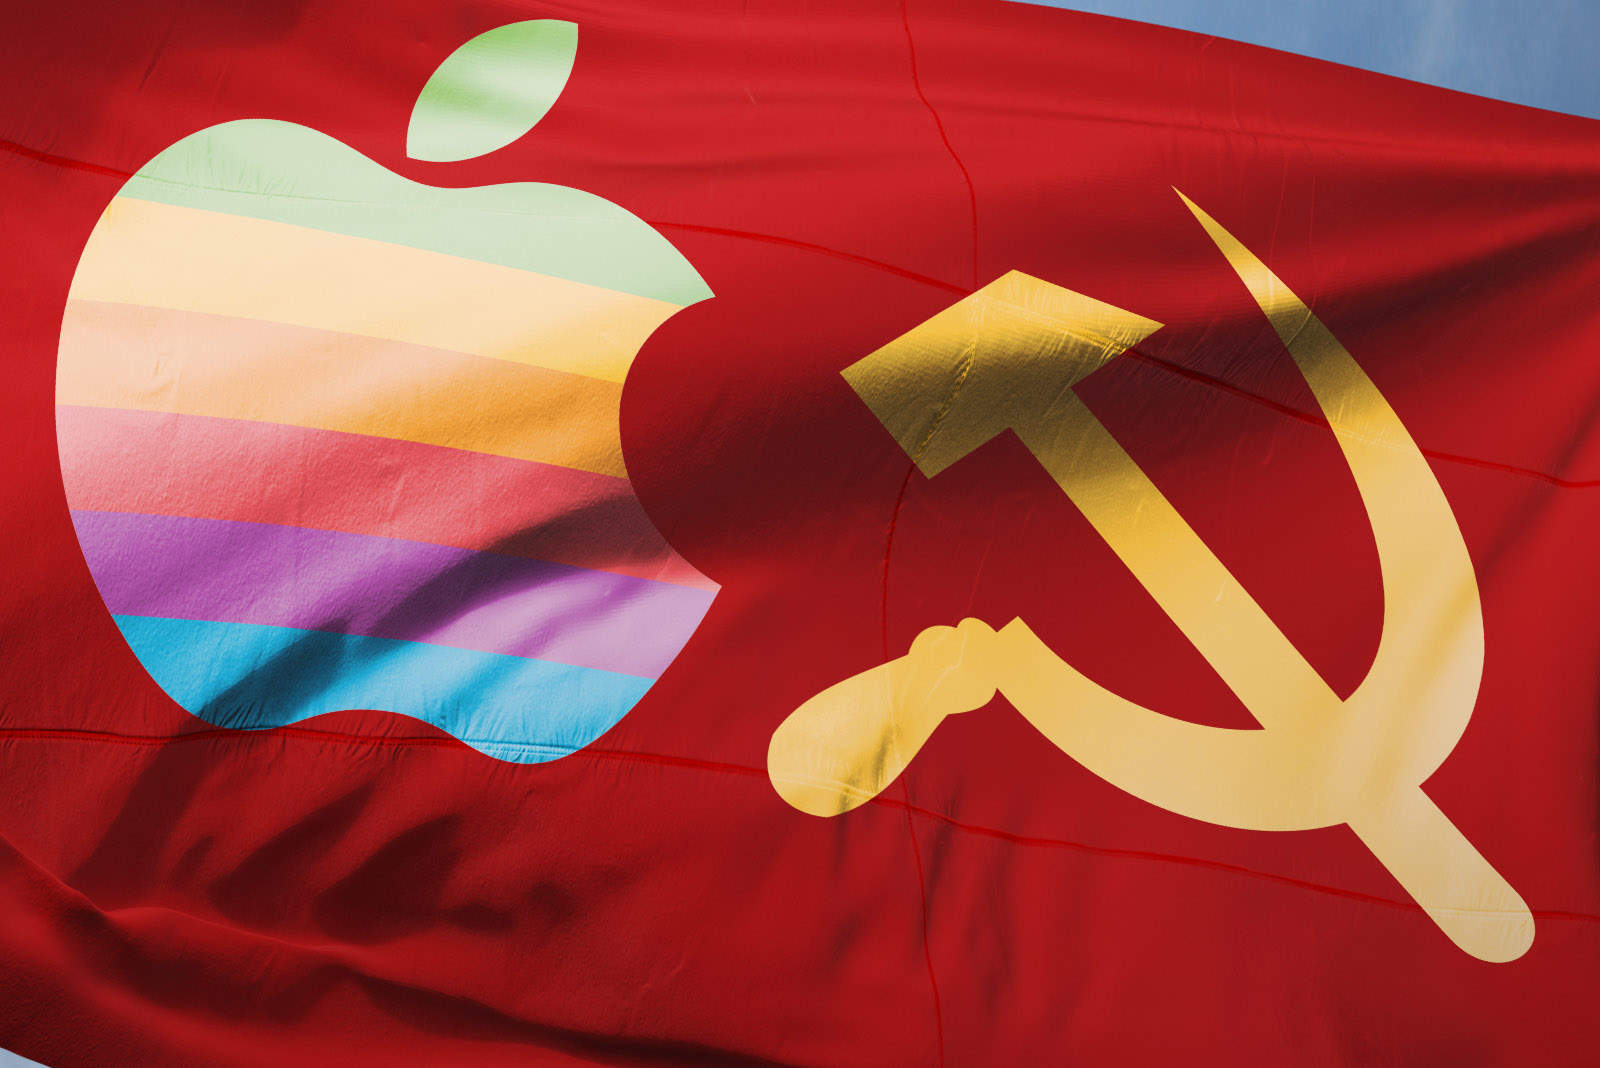 Soviet Apple flag